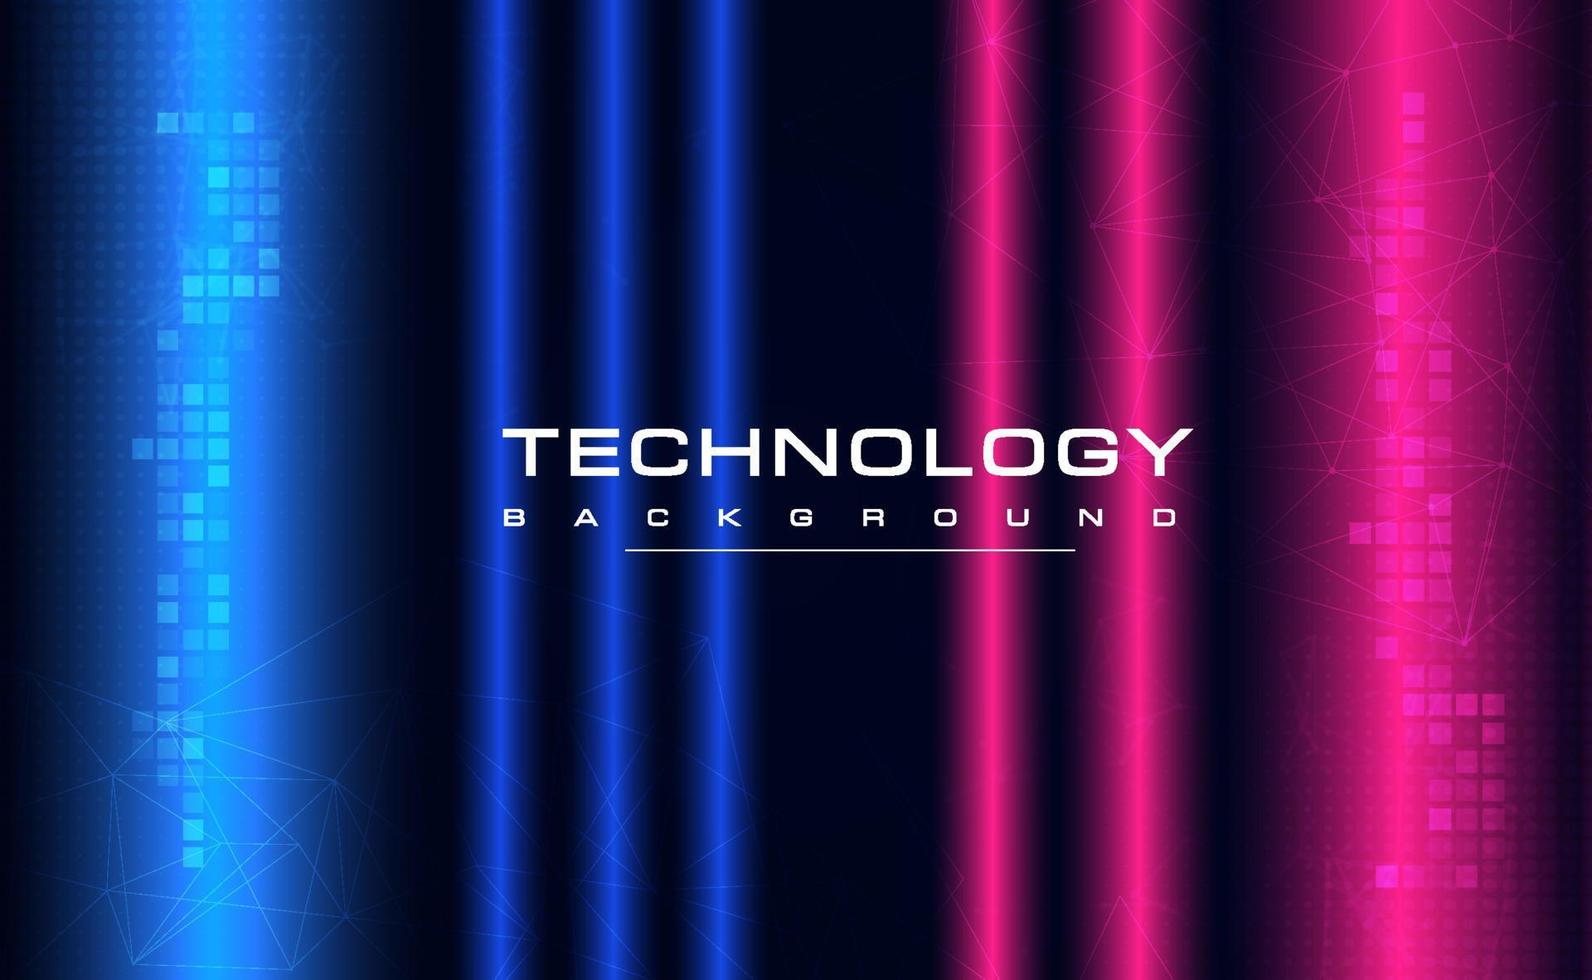 digitale technologieschaltungen rosa blauer hintergrund, ai big data iot, cyber cloud sicherheit, abstrakte neon wifi technologie, innovationszukunft, futuristische internetnetzwerkverbindung, illustrationsvektor vektor